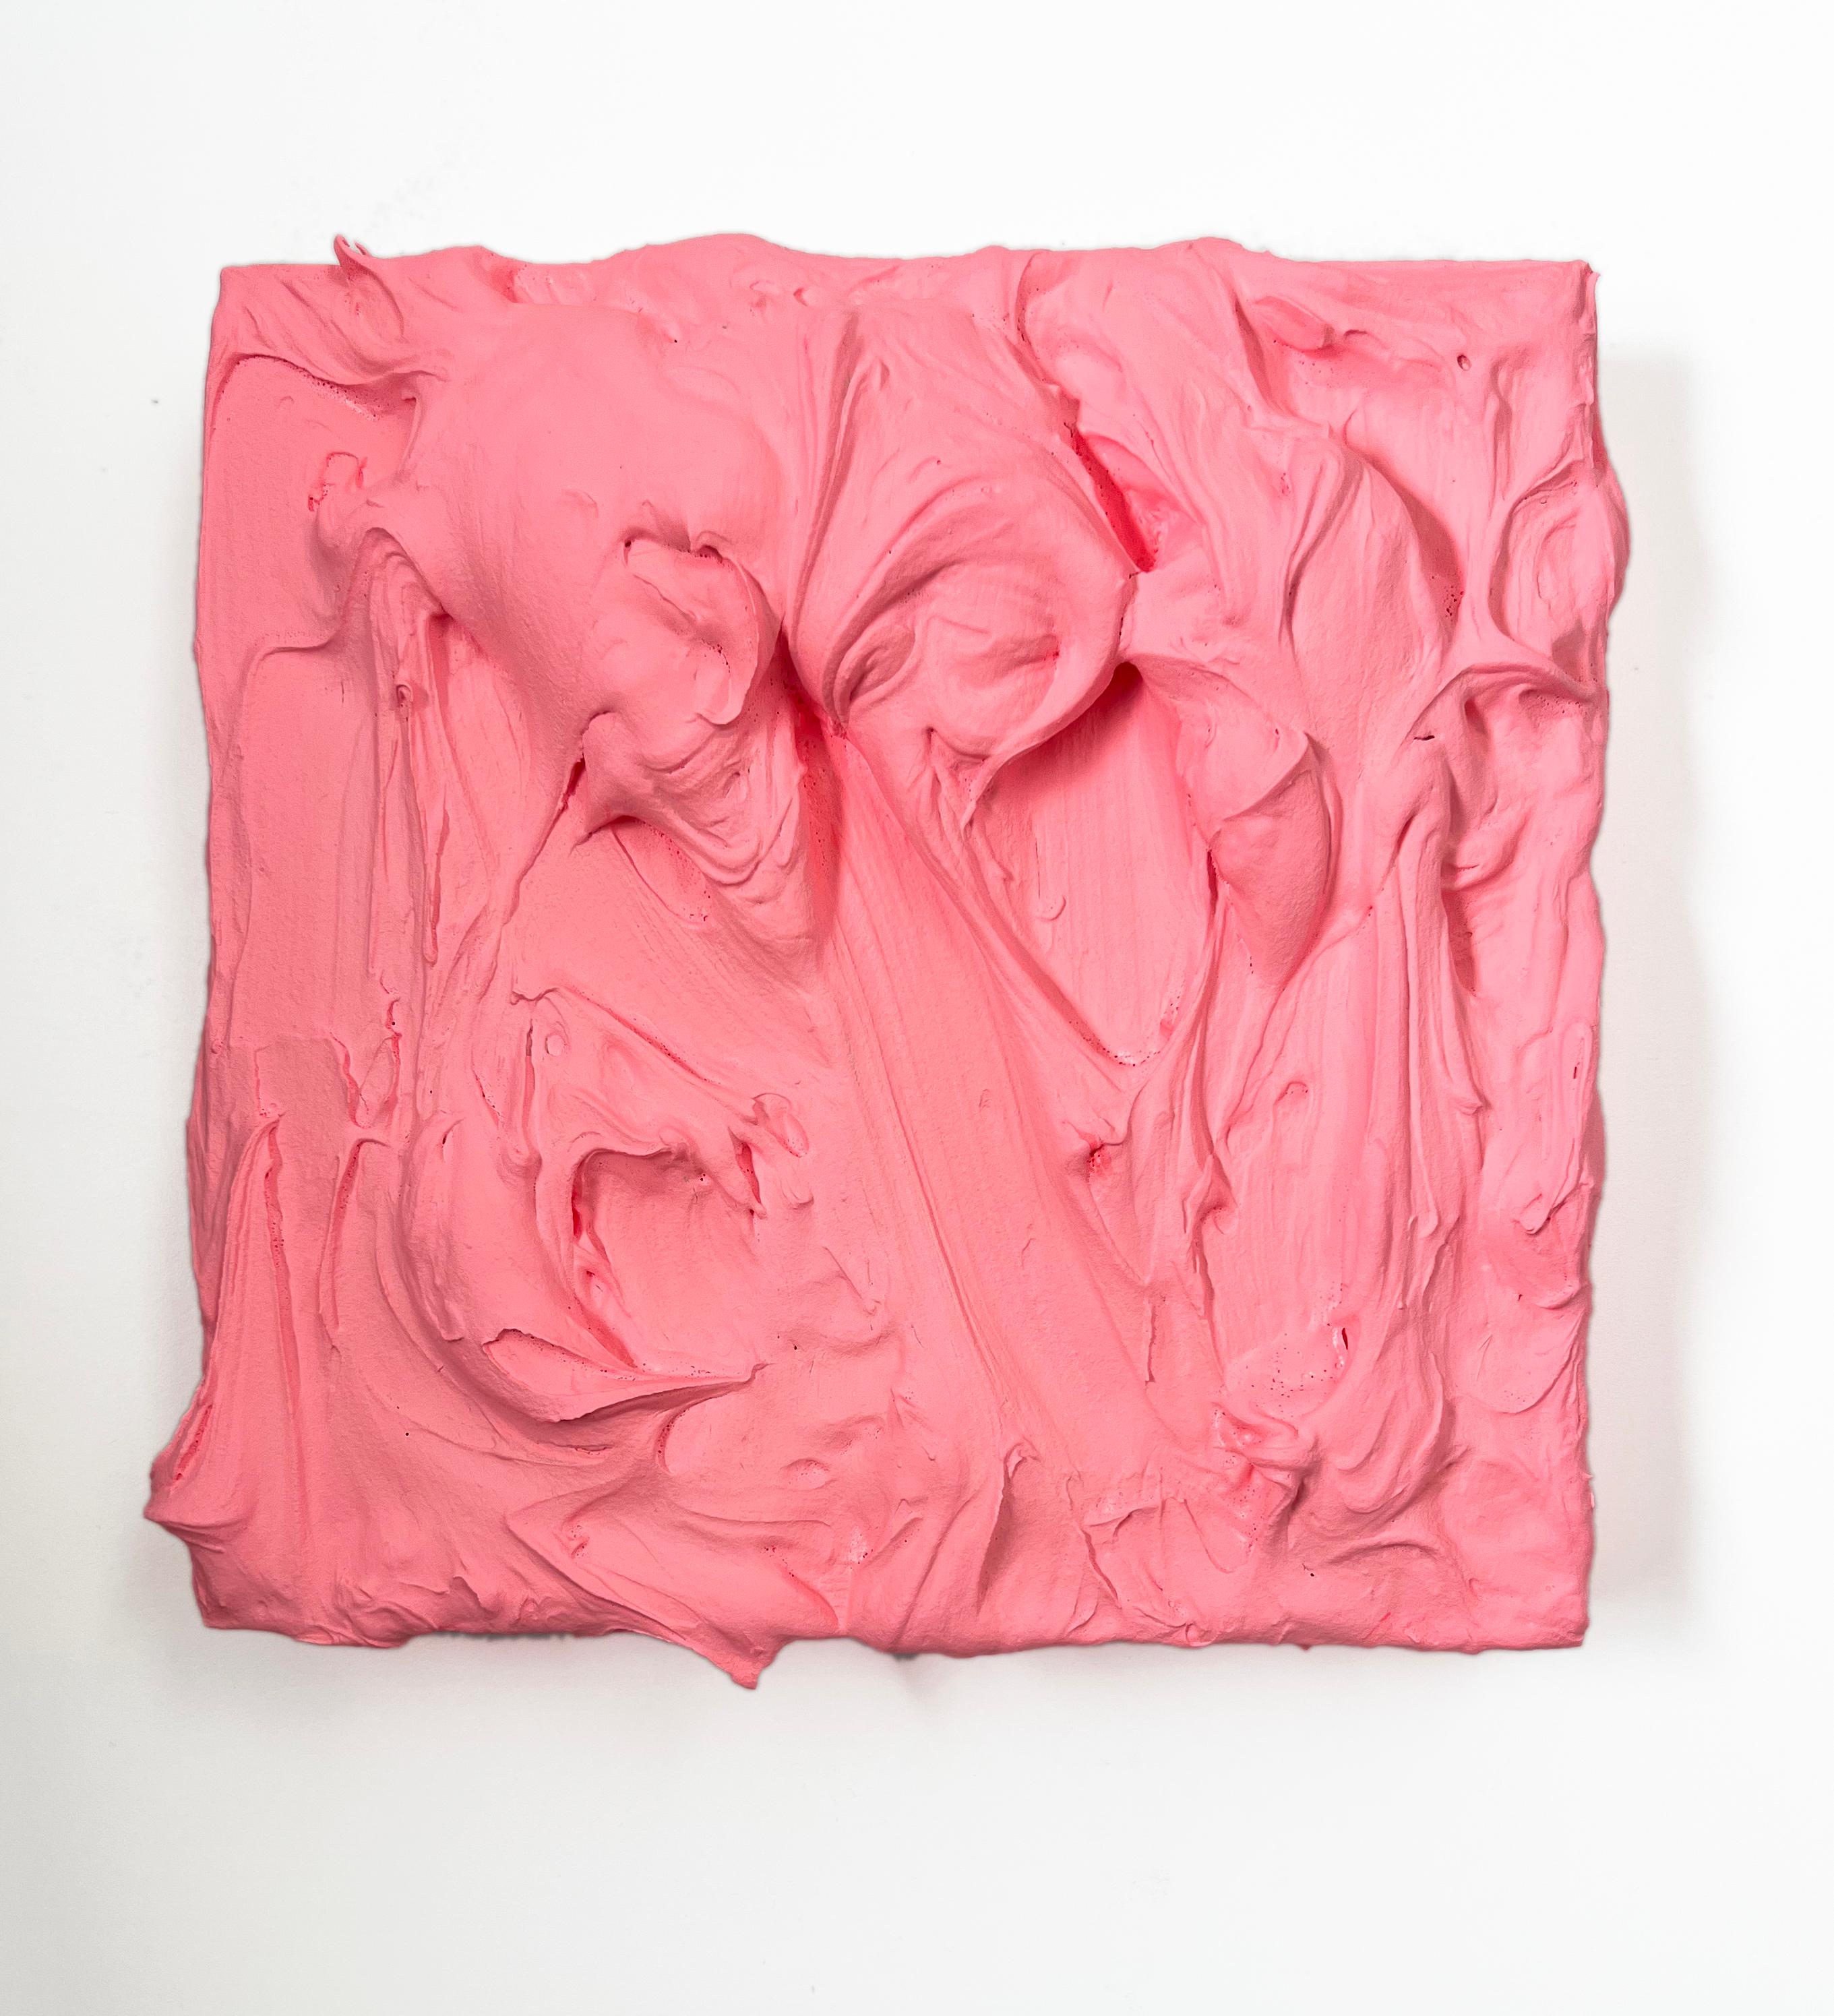  80er Pfirsich Excess (rosafarbenes, mehrfarbiges, monochromes, quadratisches Gemälde im Pop-Design)